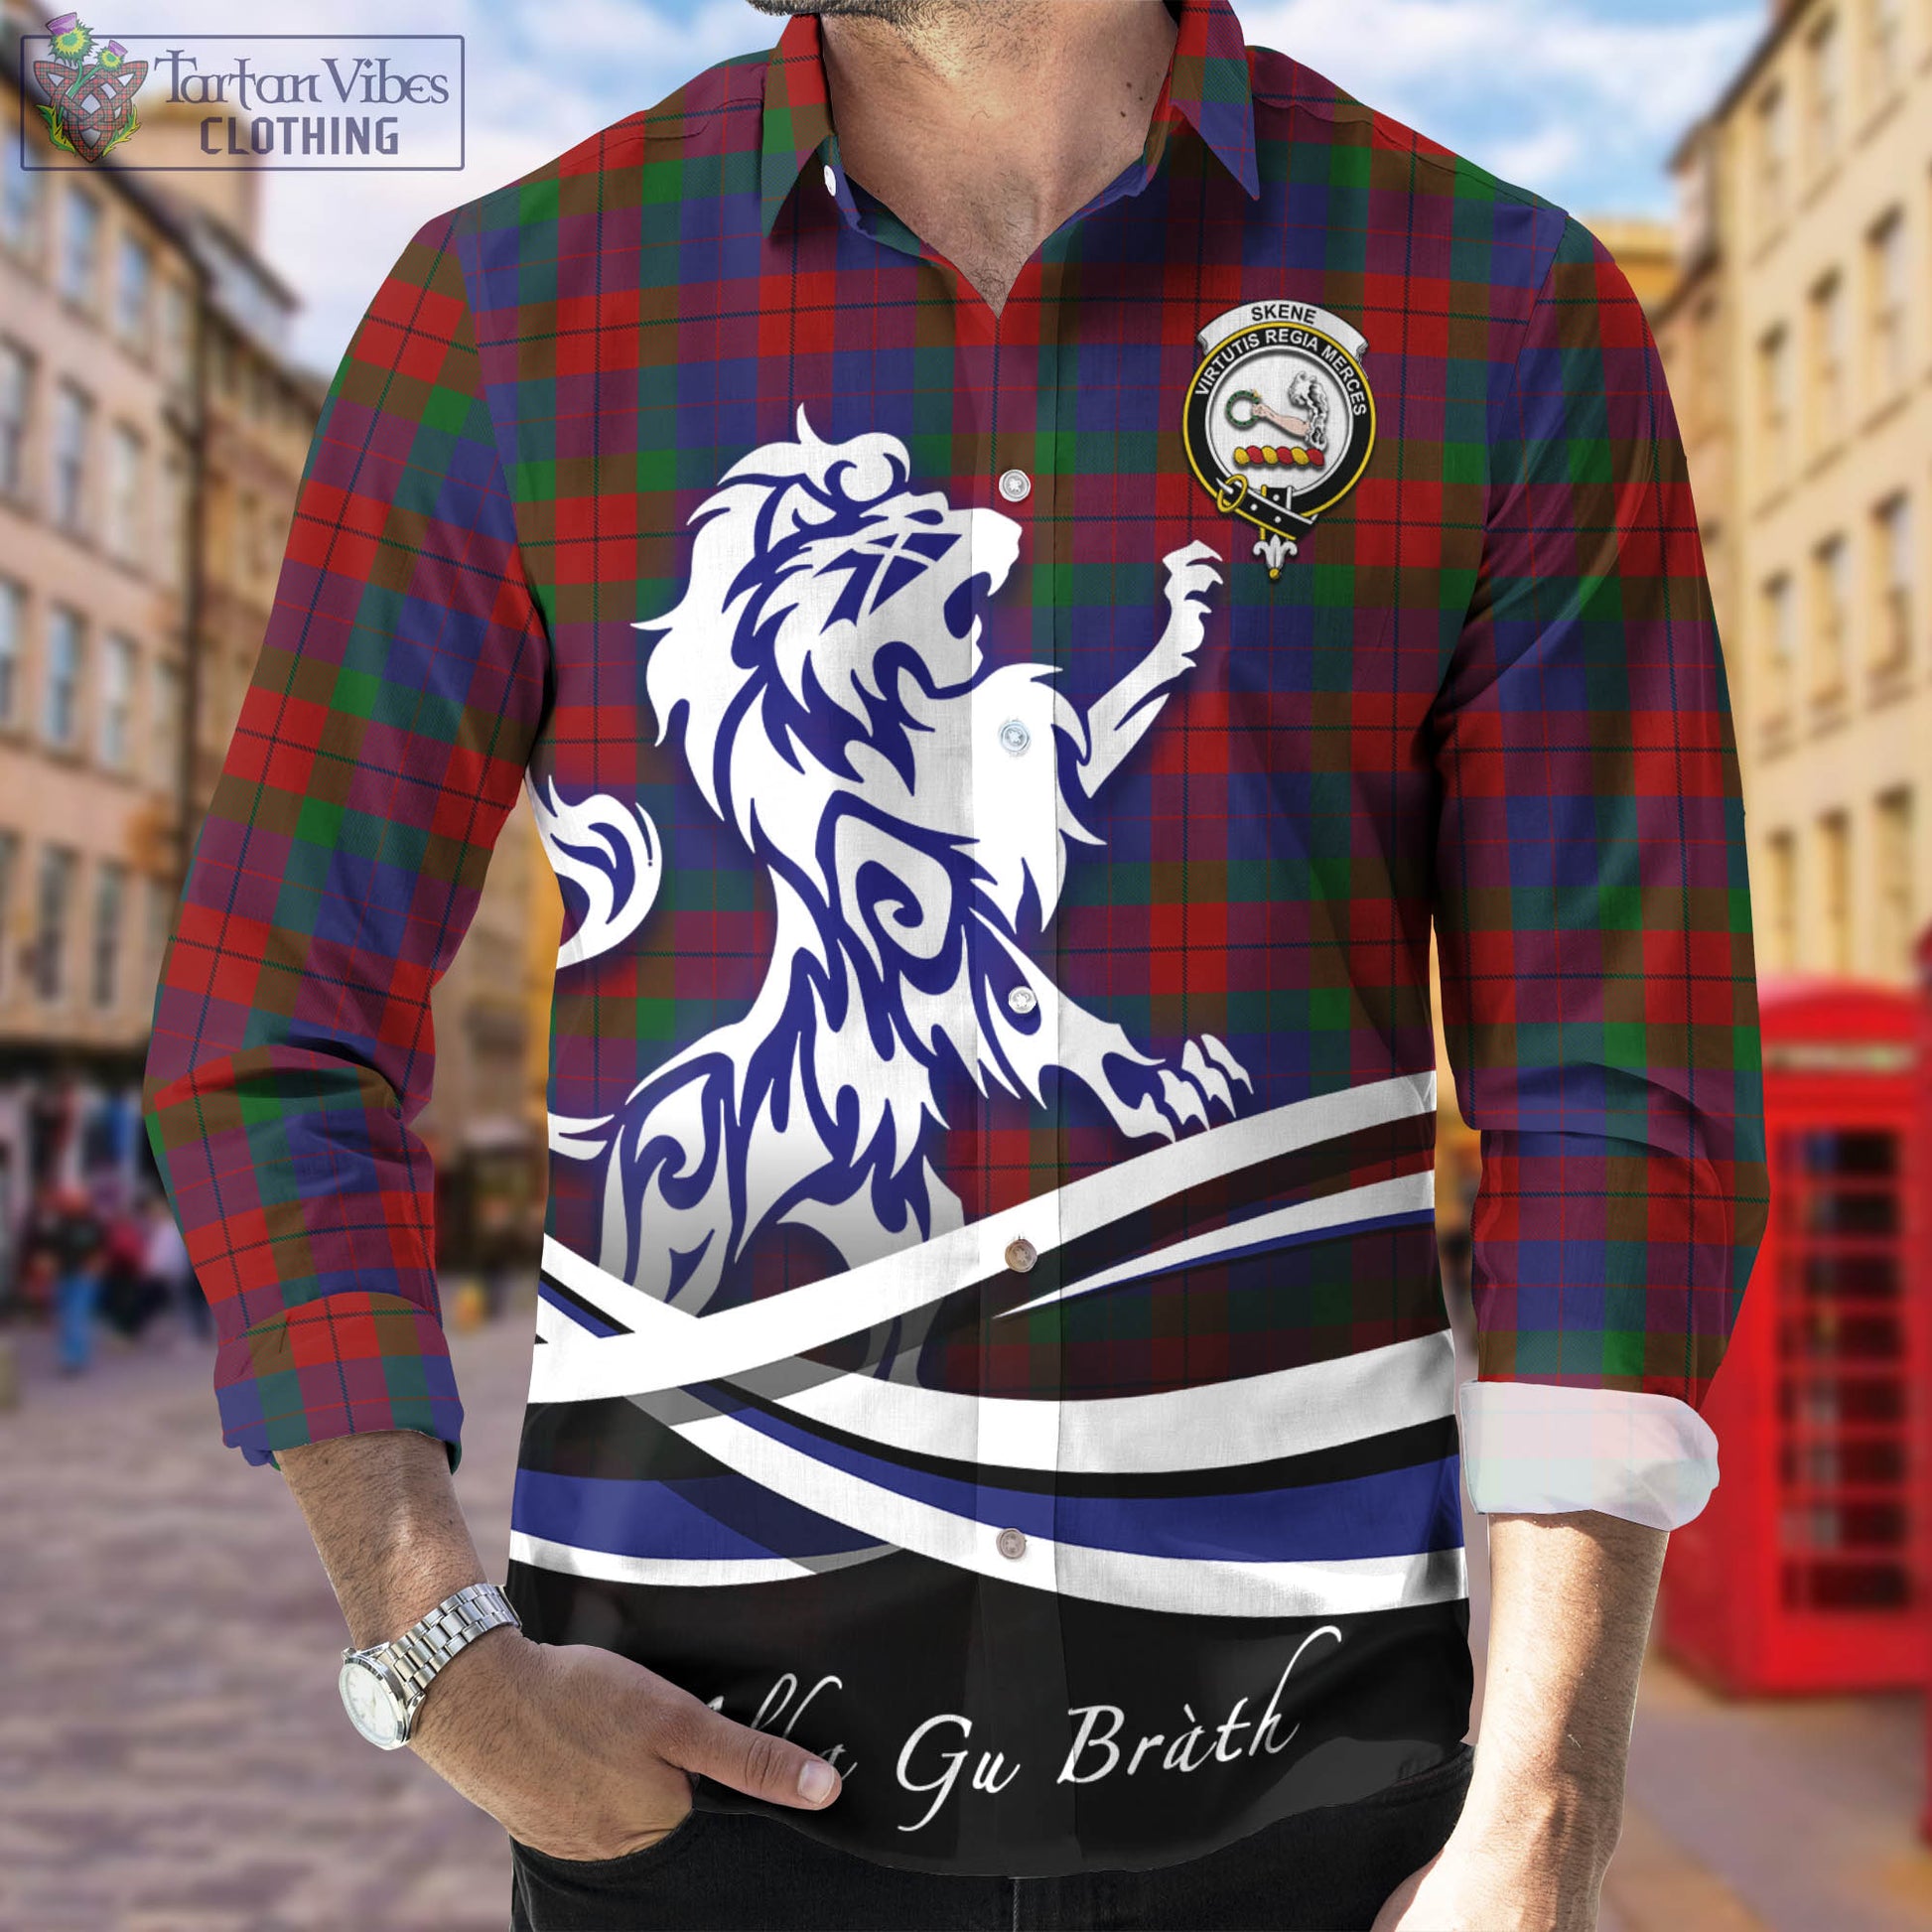 skene-of-cromar-tartan-long-sleeve-button-up-shirt-with-alba-gu-brath-regal-lion-emblem